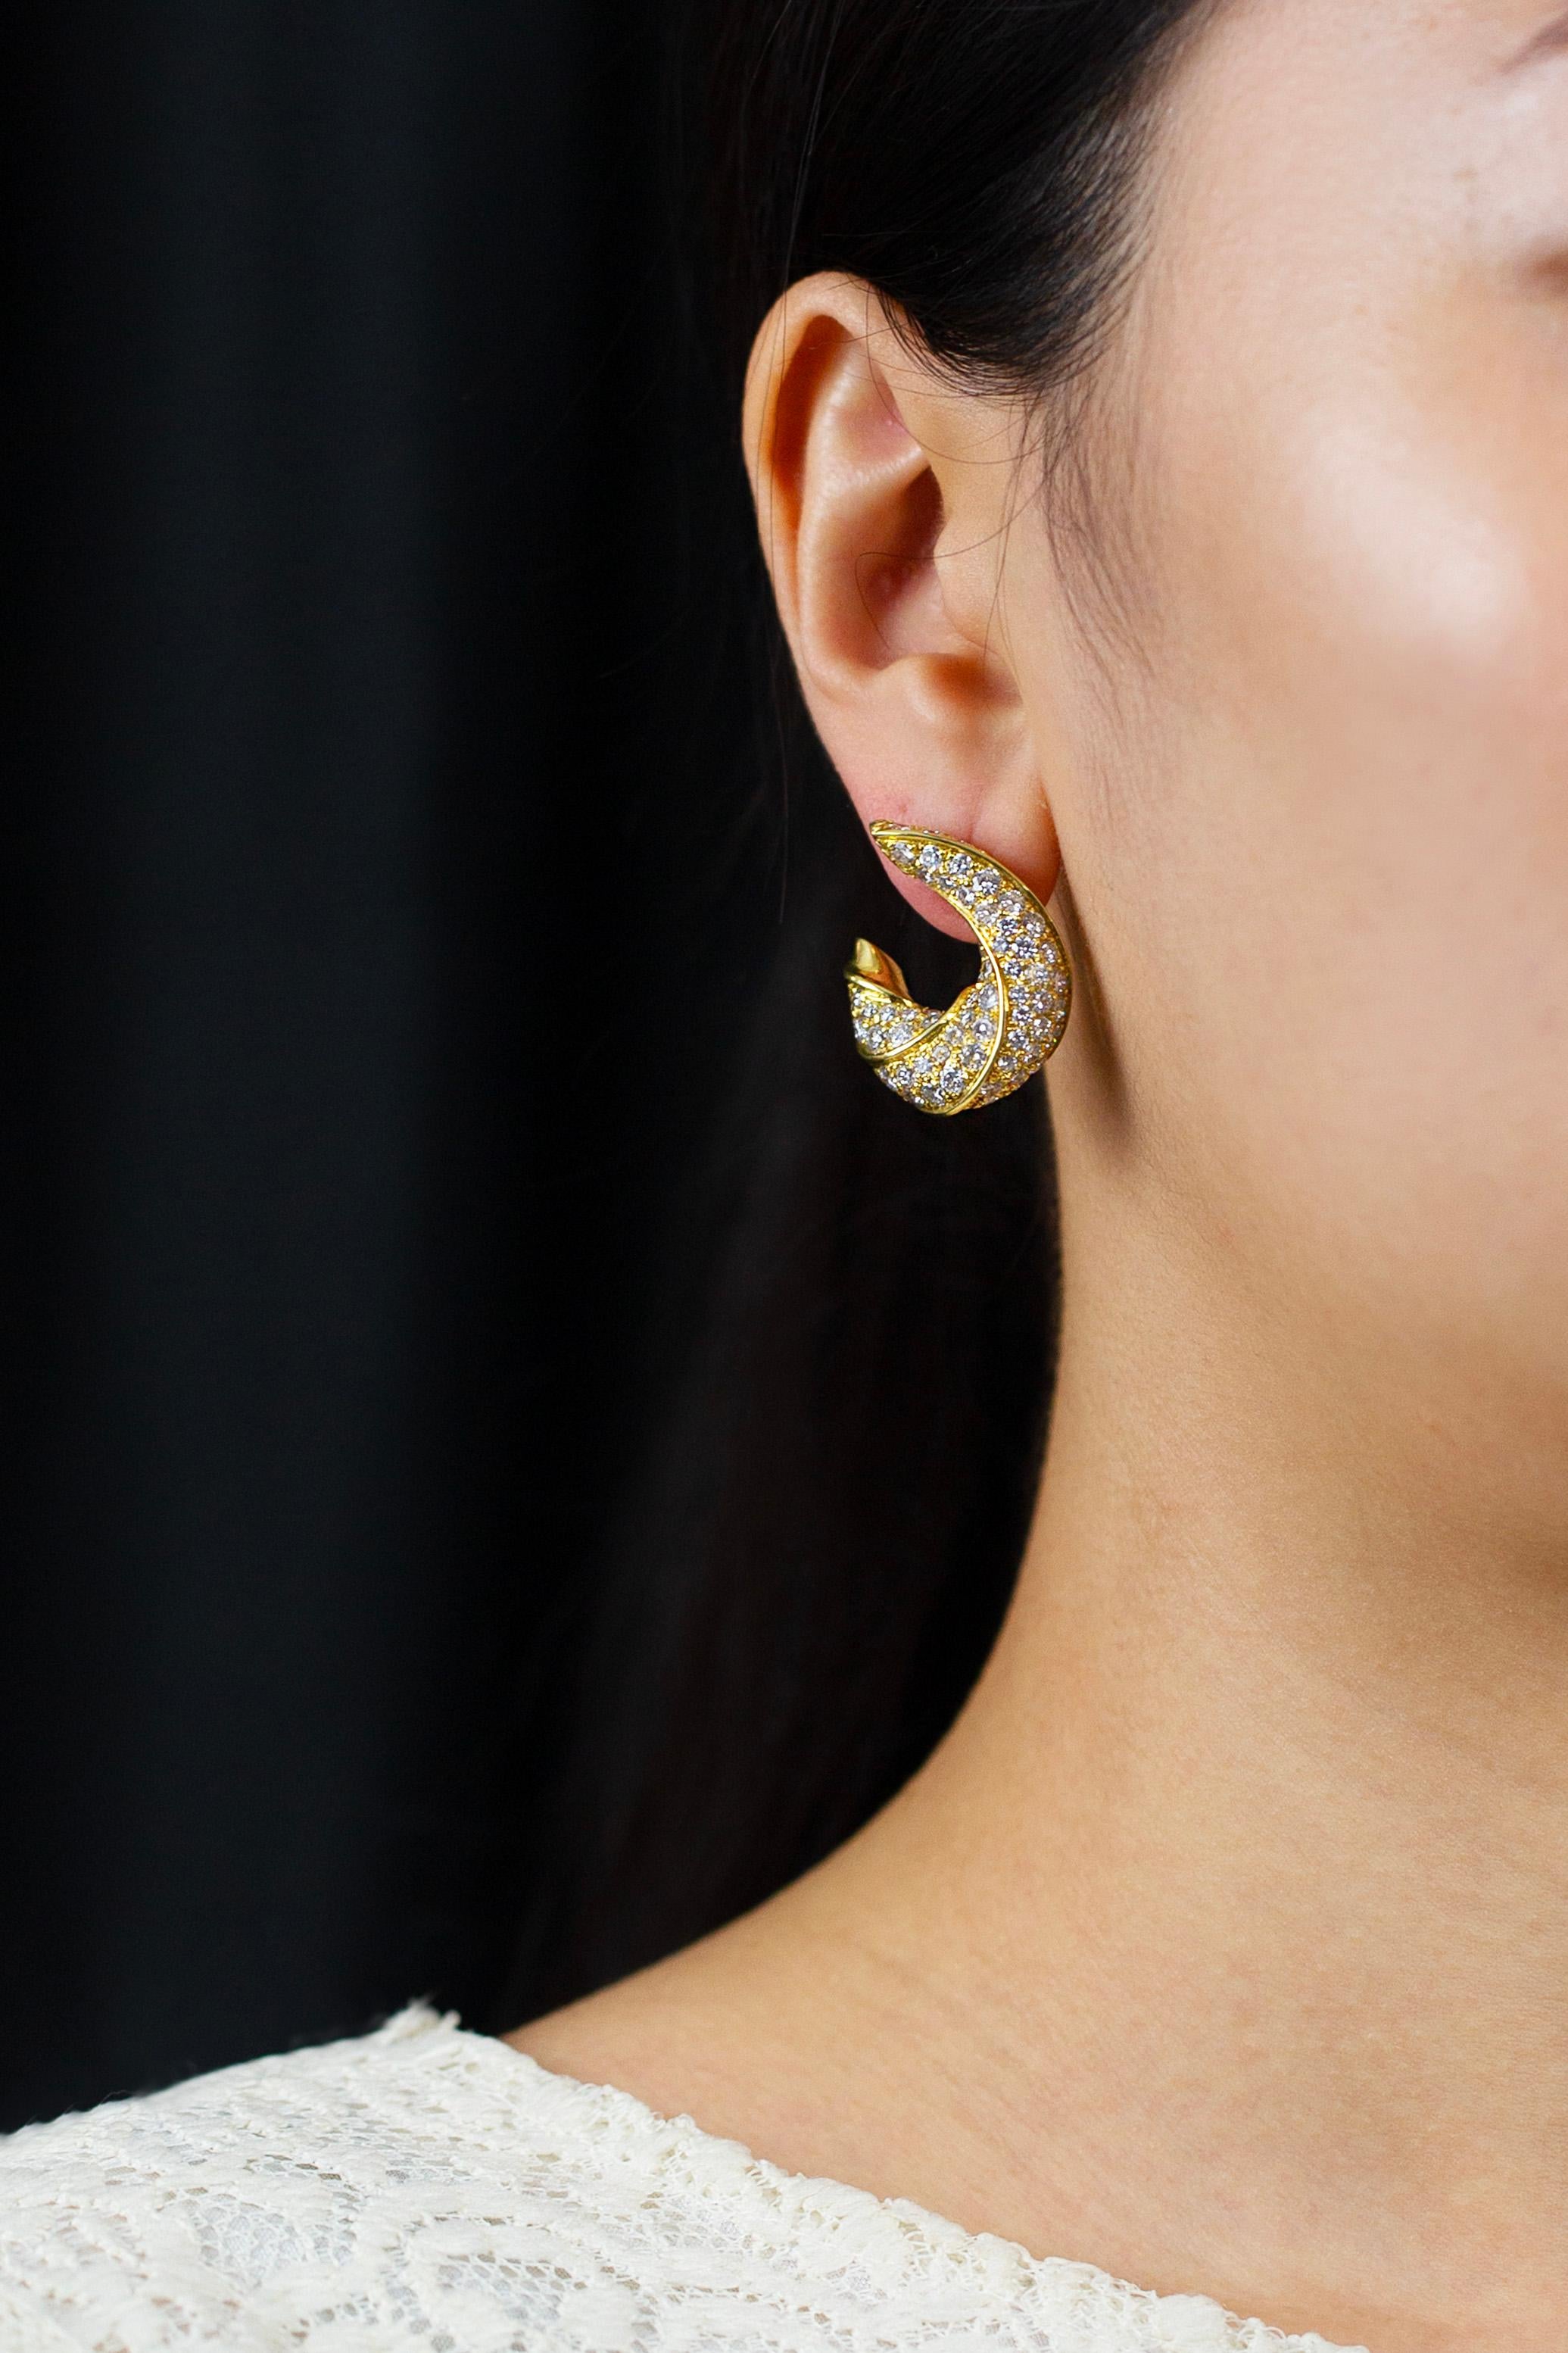 Einzigartige und modische Ohrringe mit insgesamt 7,03 Karat Diamanten im Brillantschliff, gefasst in einem komplizierten, gedrehten Design und hergestellt aus 18 Karat Gelbgold. Omega-Clip mit Pfosten. 

Roman Malakov ist ein Unternehmen, das sich